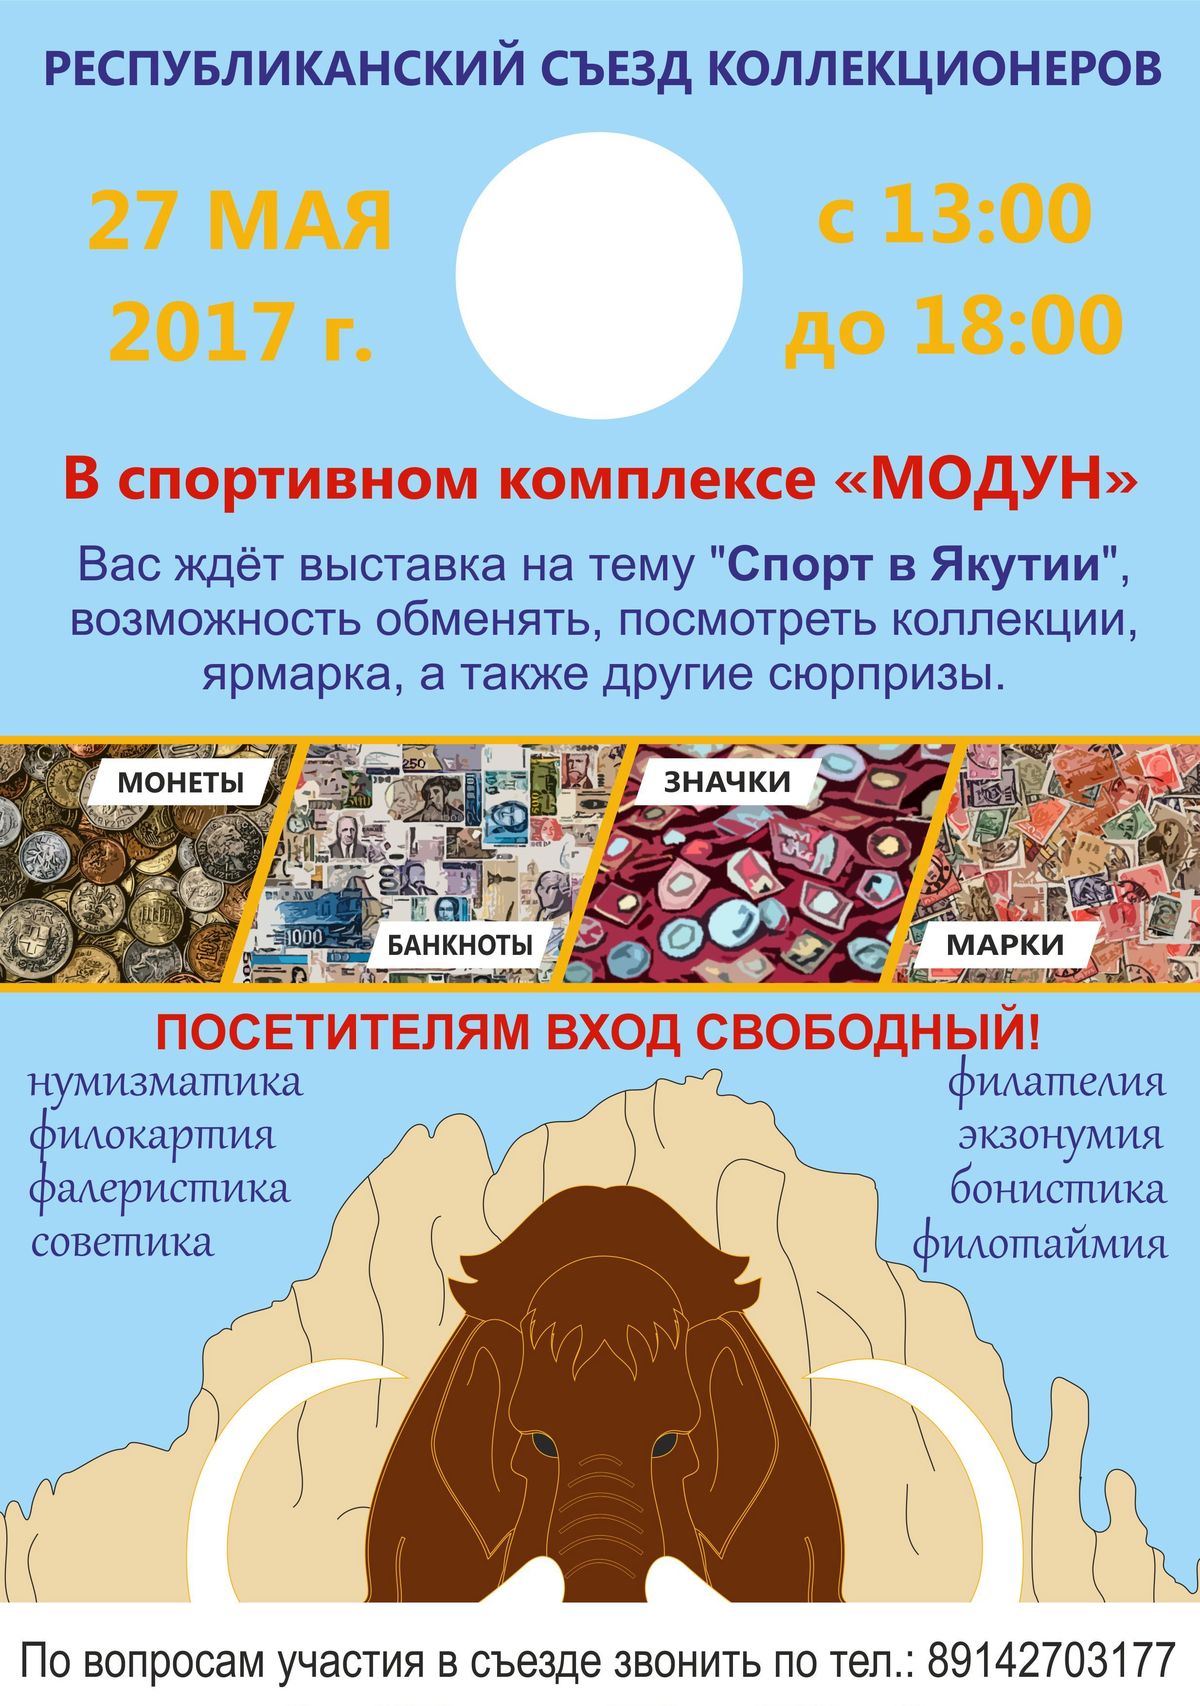 В Якутске состоится съезд коллекционеров